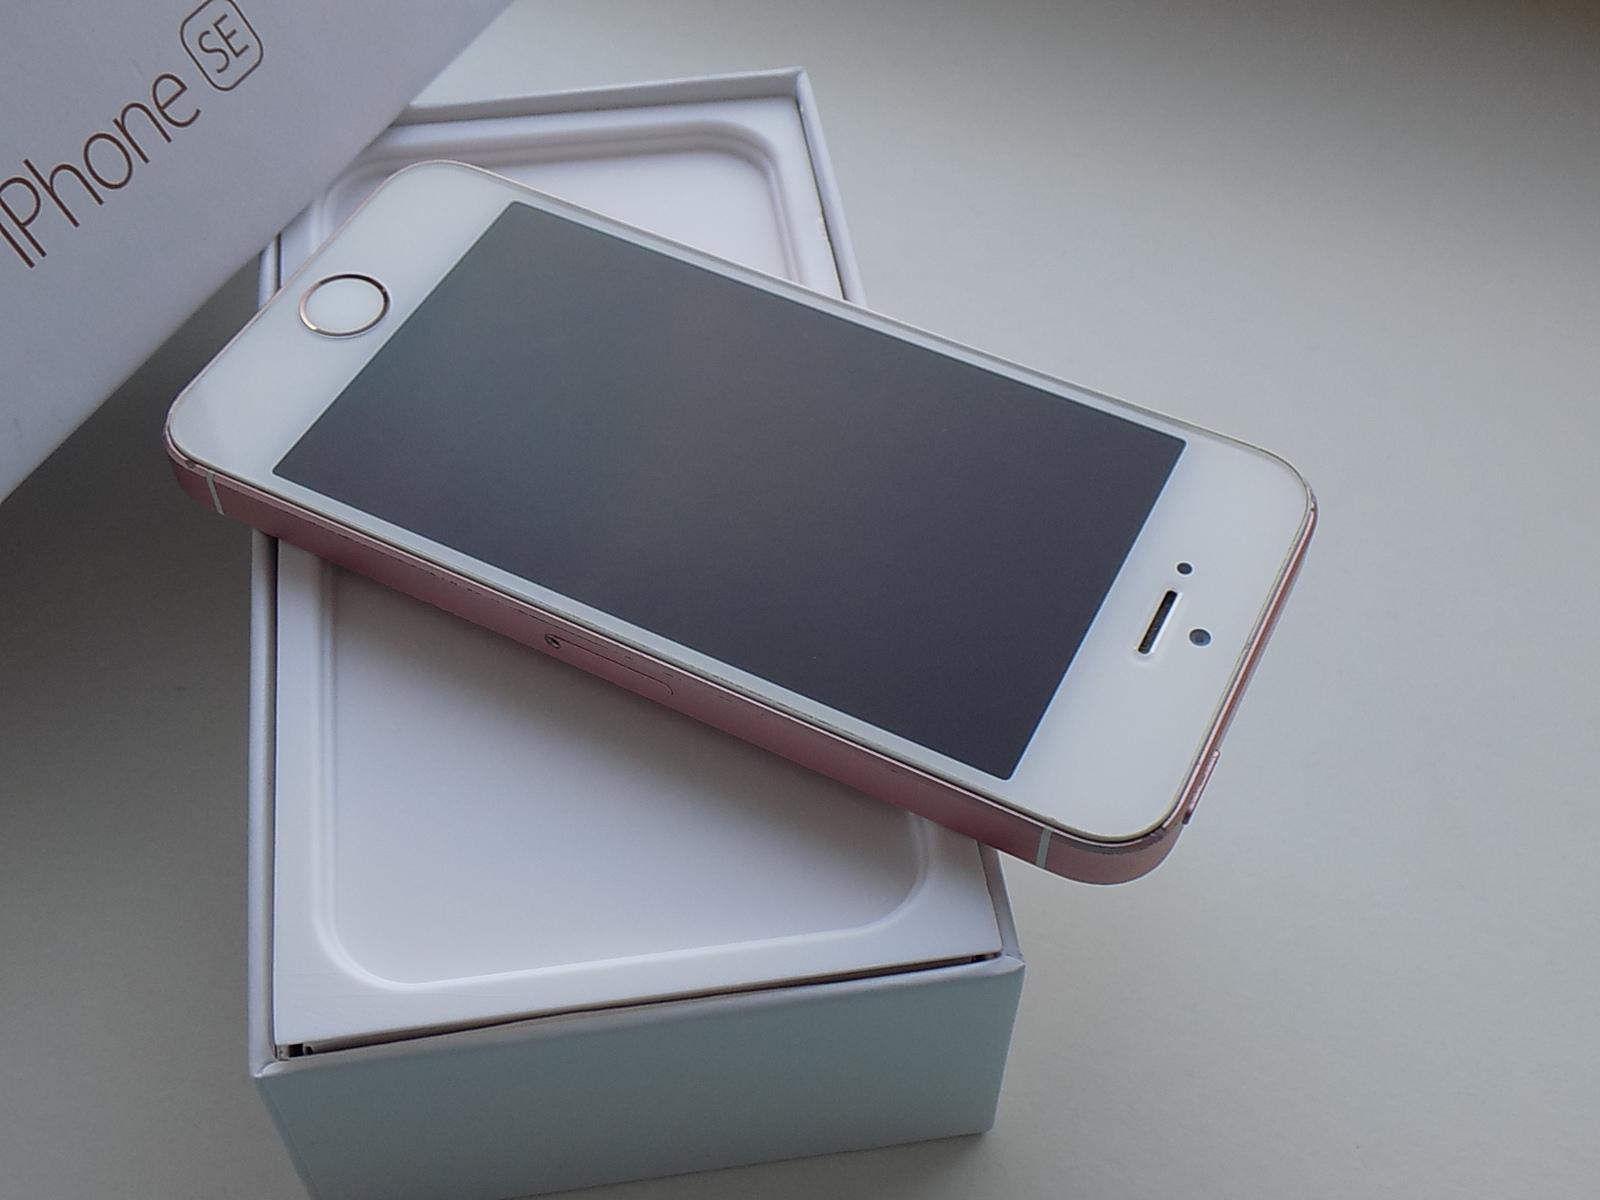 APPLE iPhone SE 32GB Rose Gold - KOMPLETNÍ BALENÍ - Mobily a smart elektronika